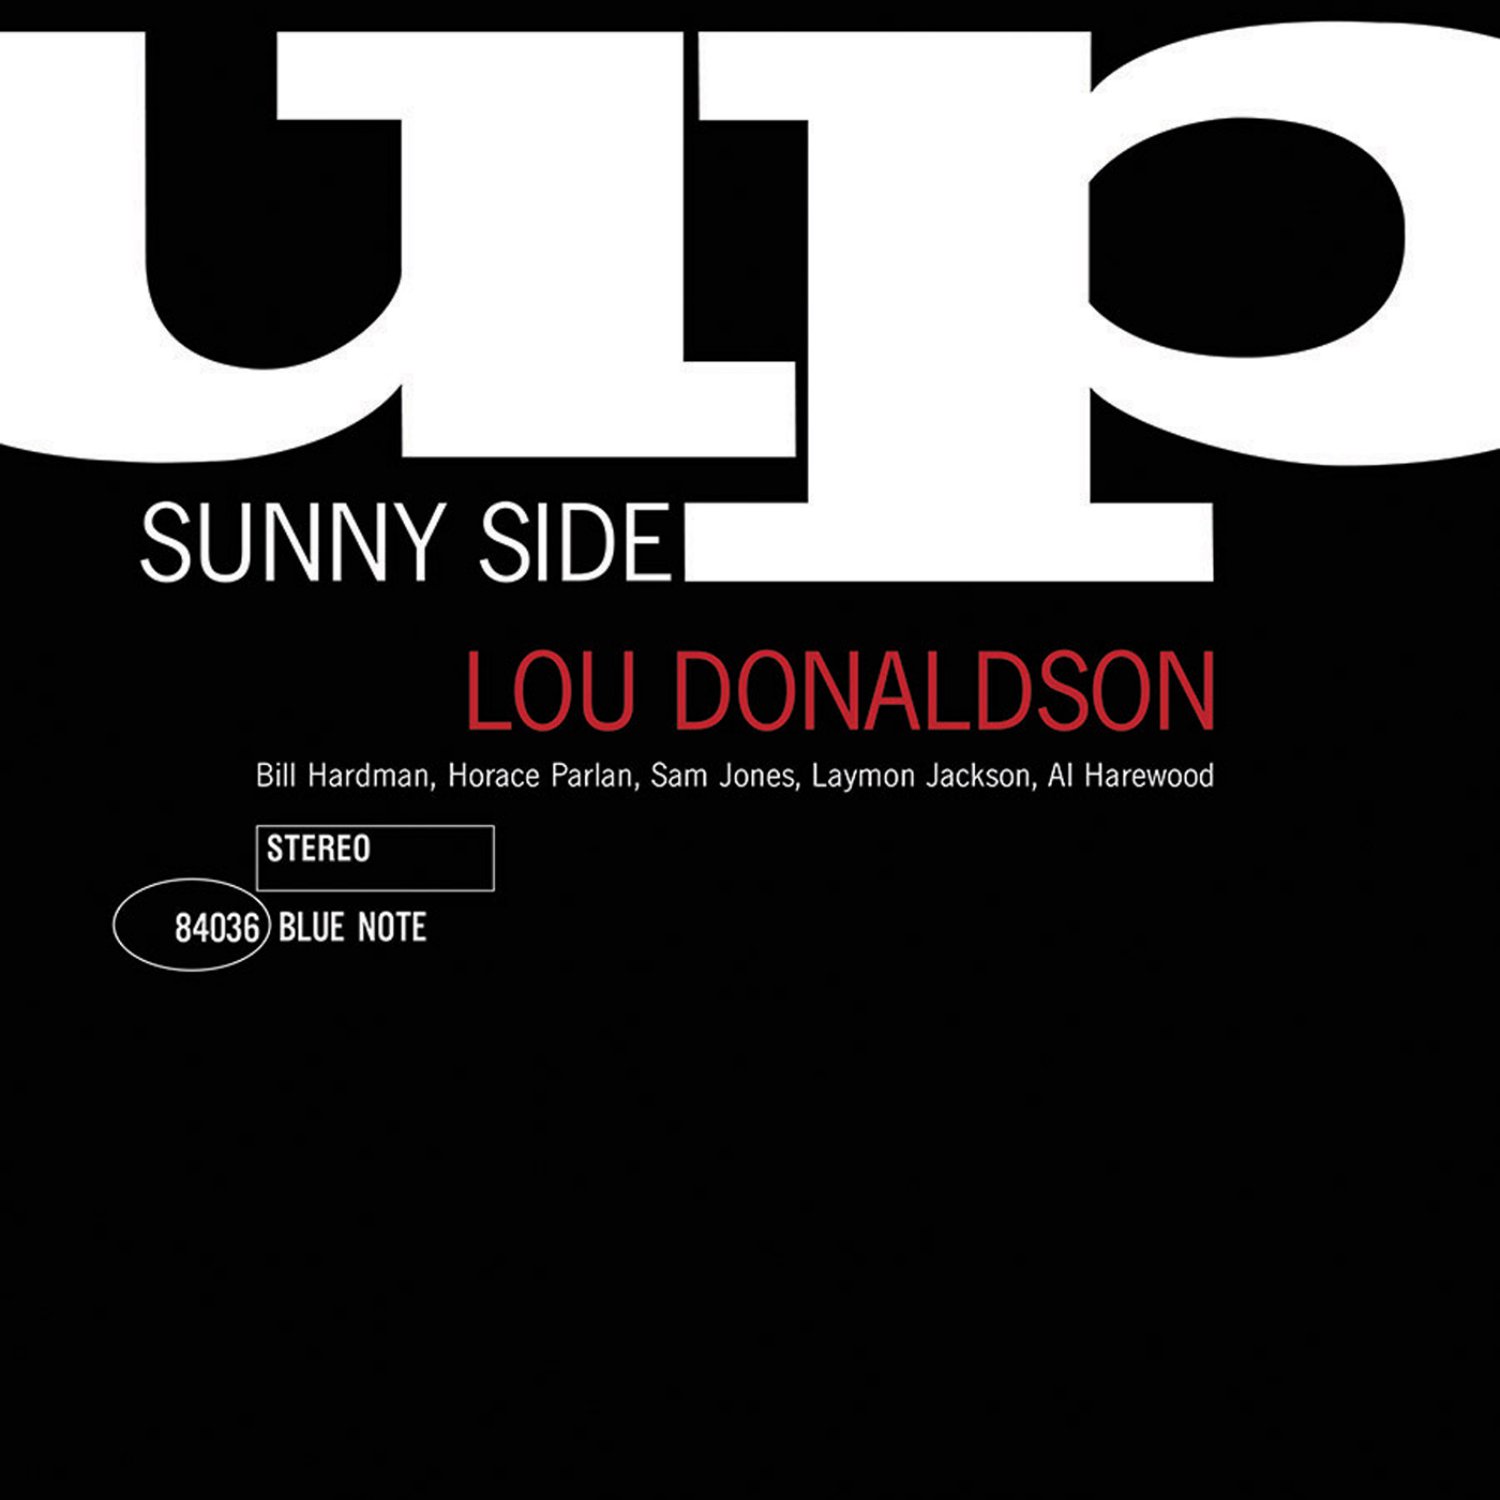 Lou Donaldson - Midnight Sun: listen with lyrics